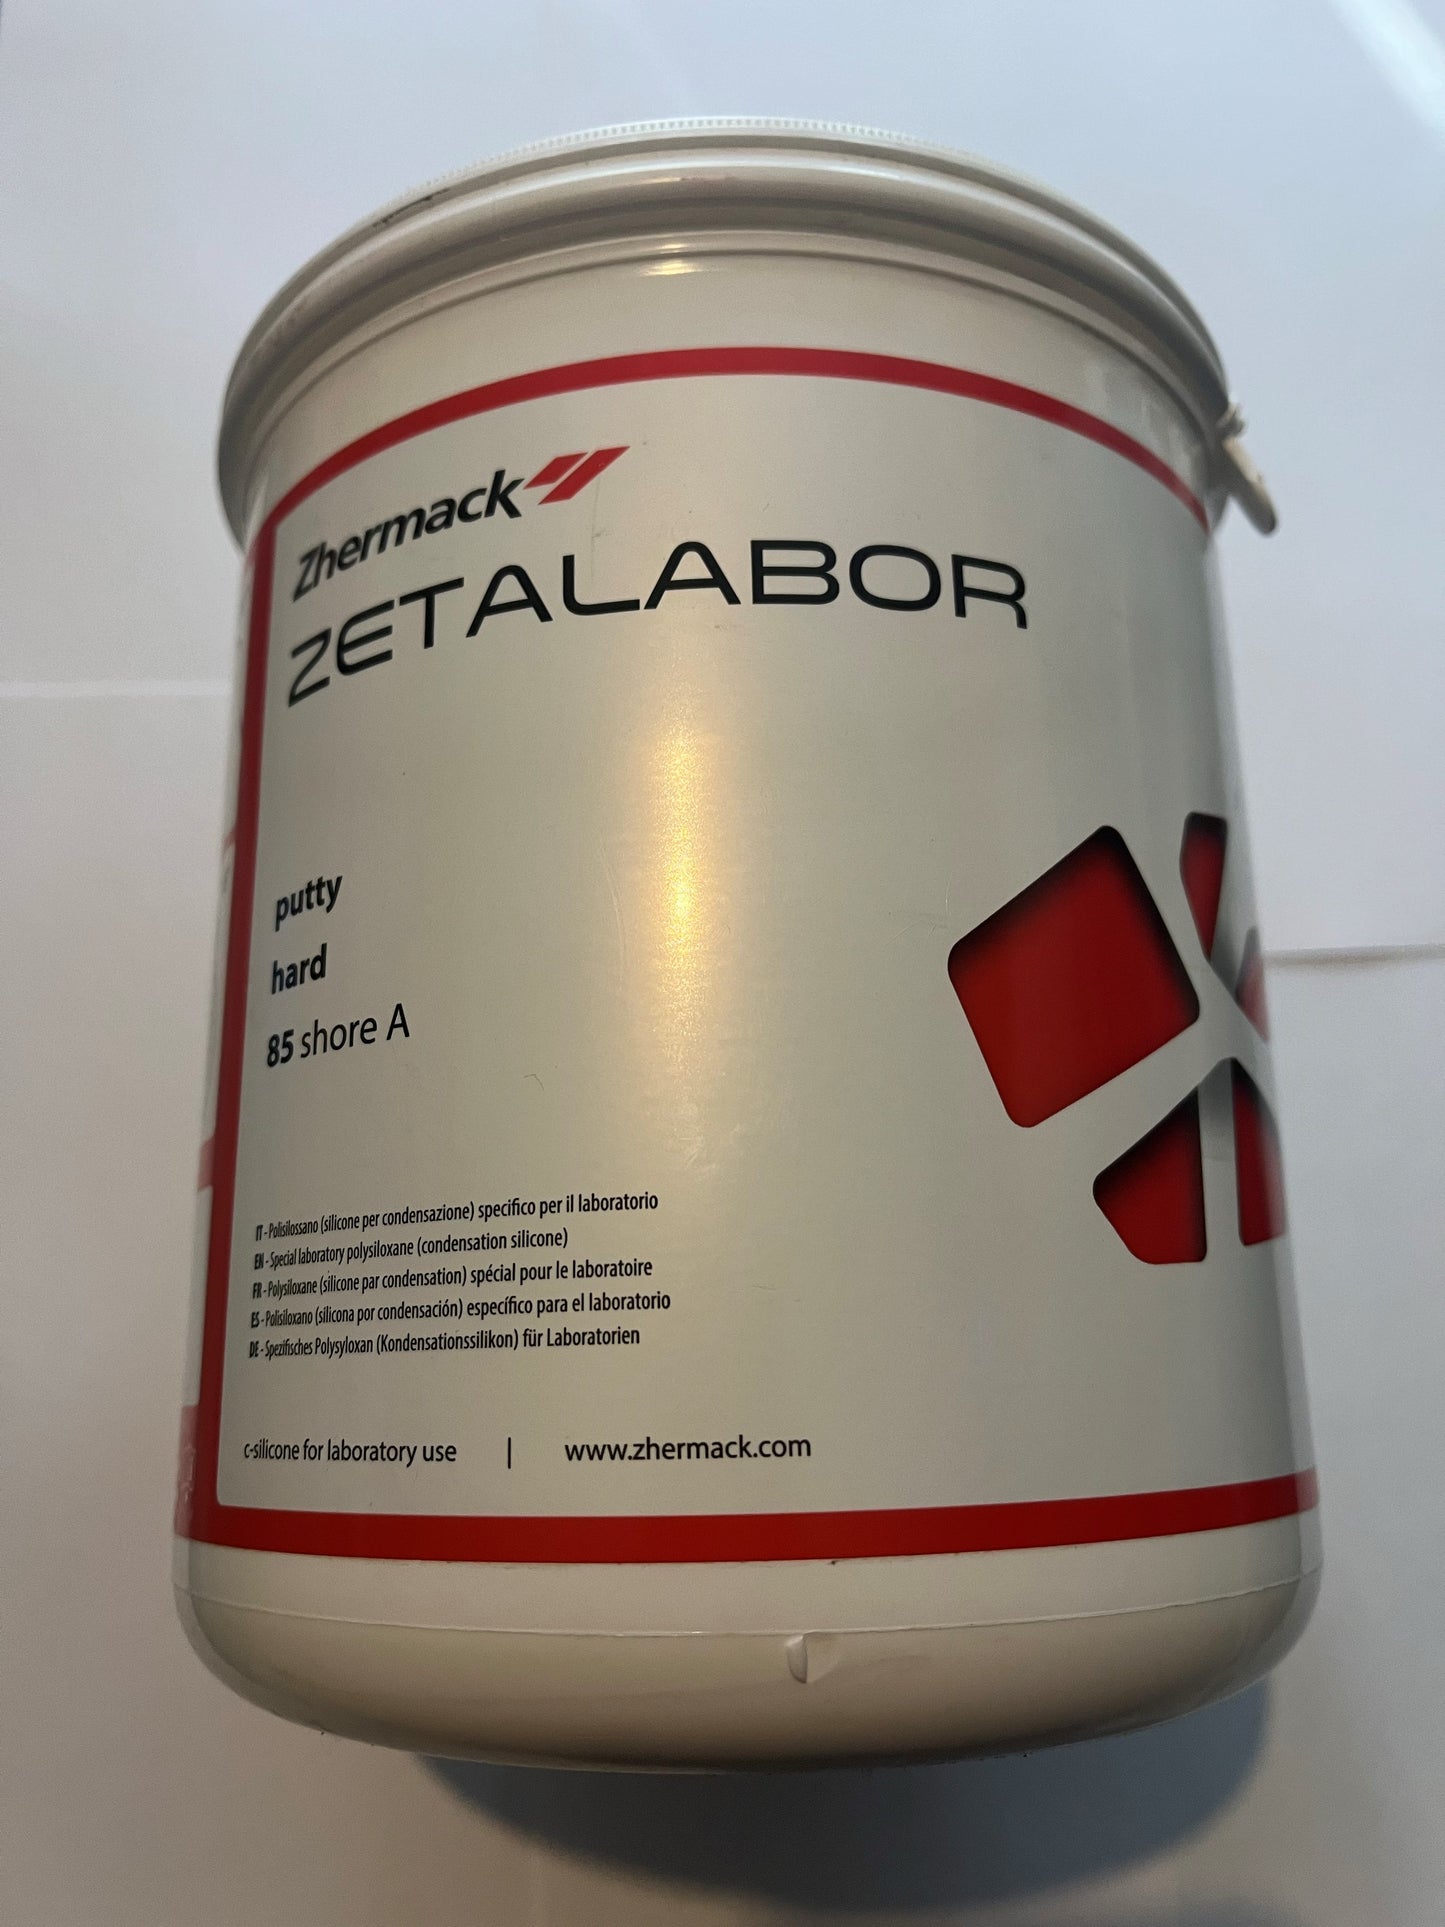 Zetalabor 2.6kg silicón pesado laboratorio